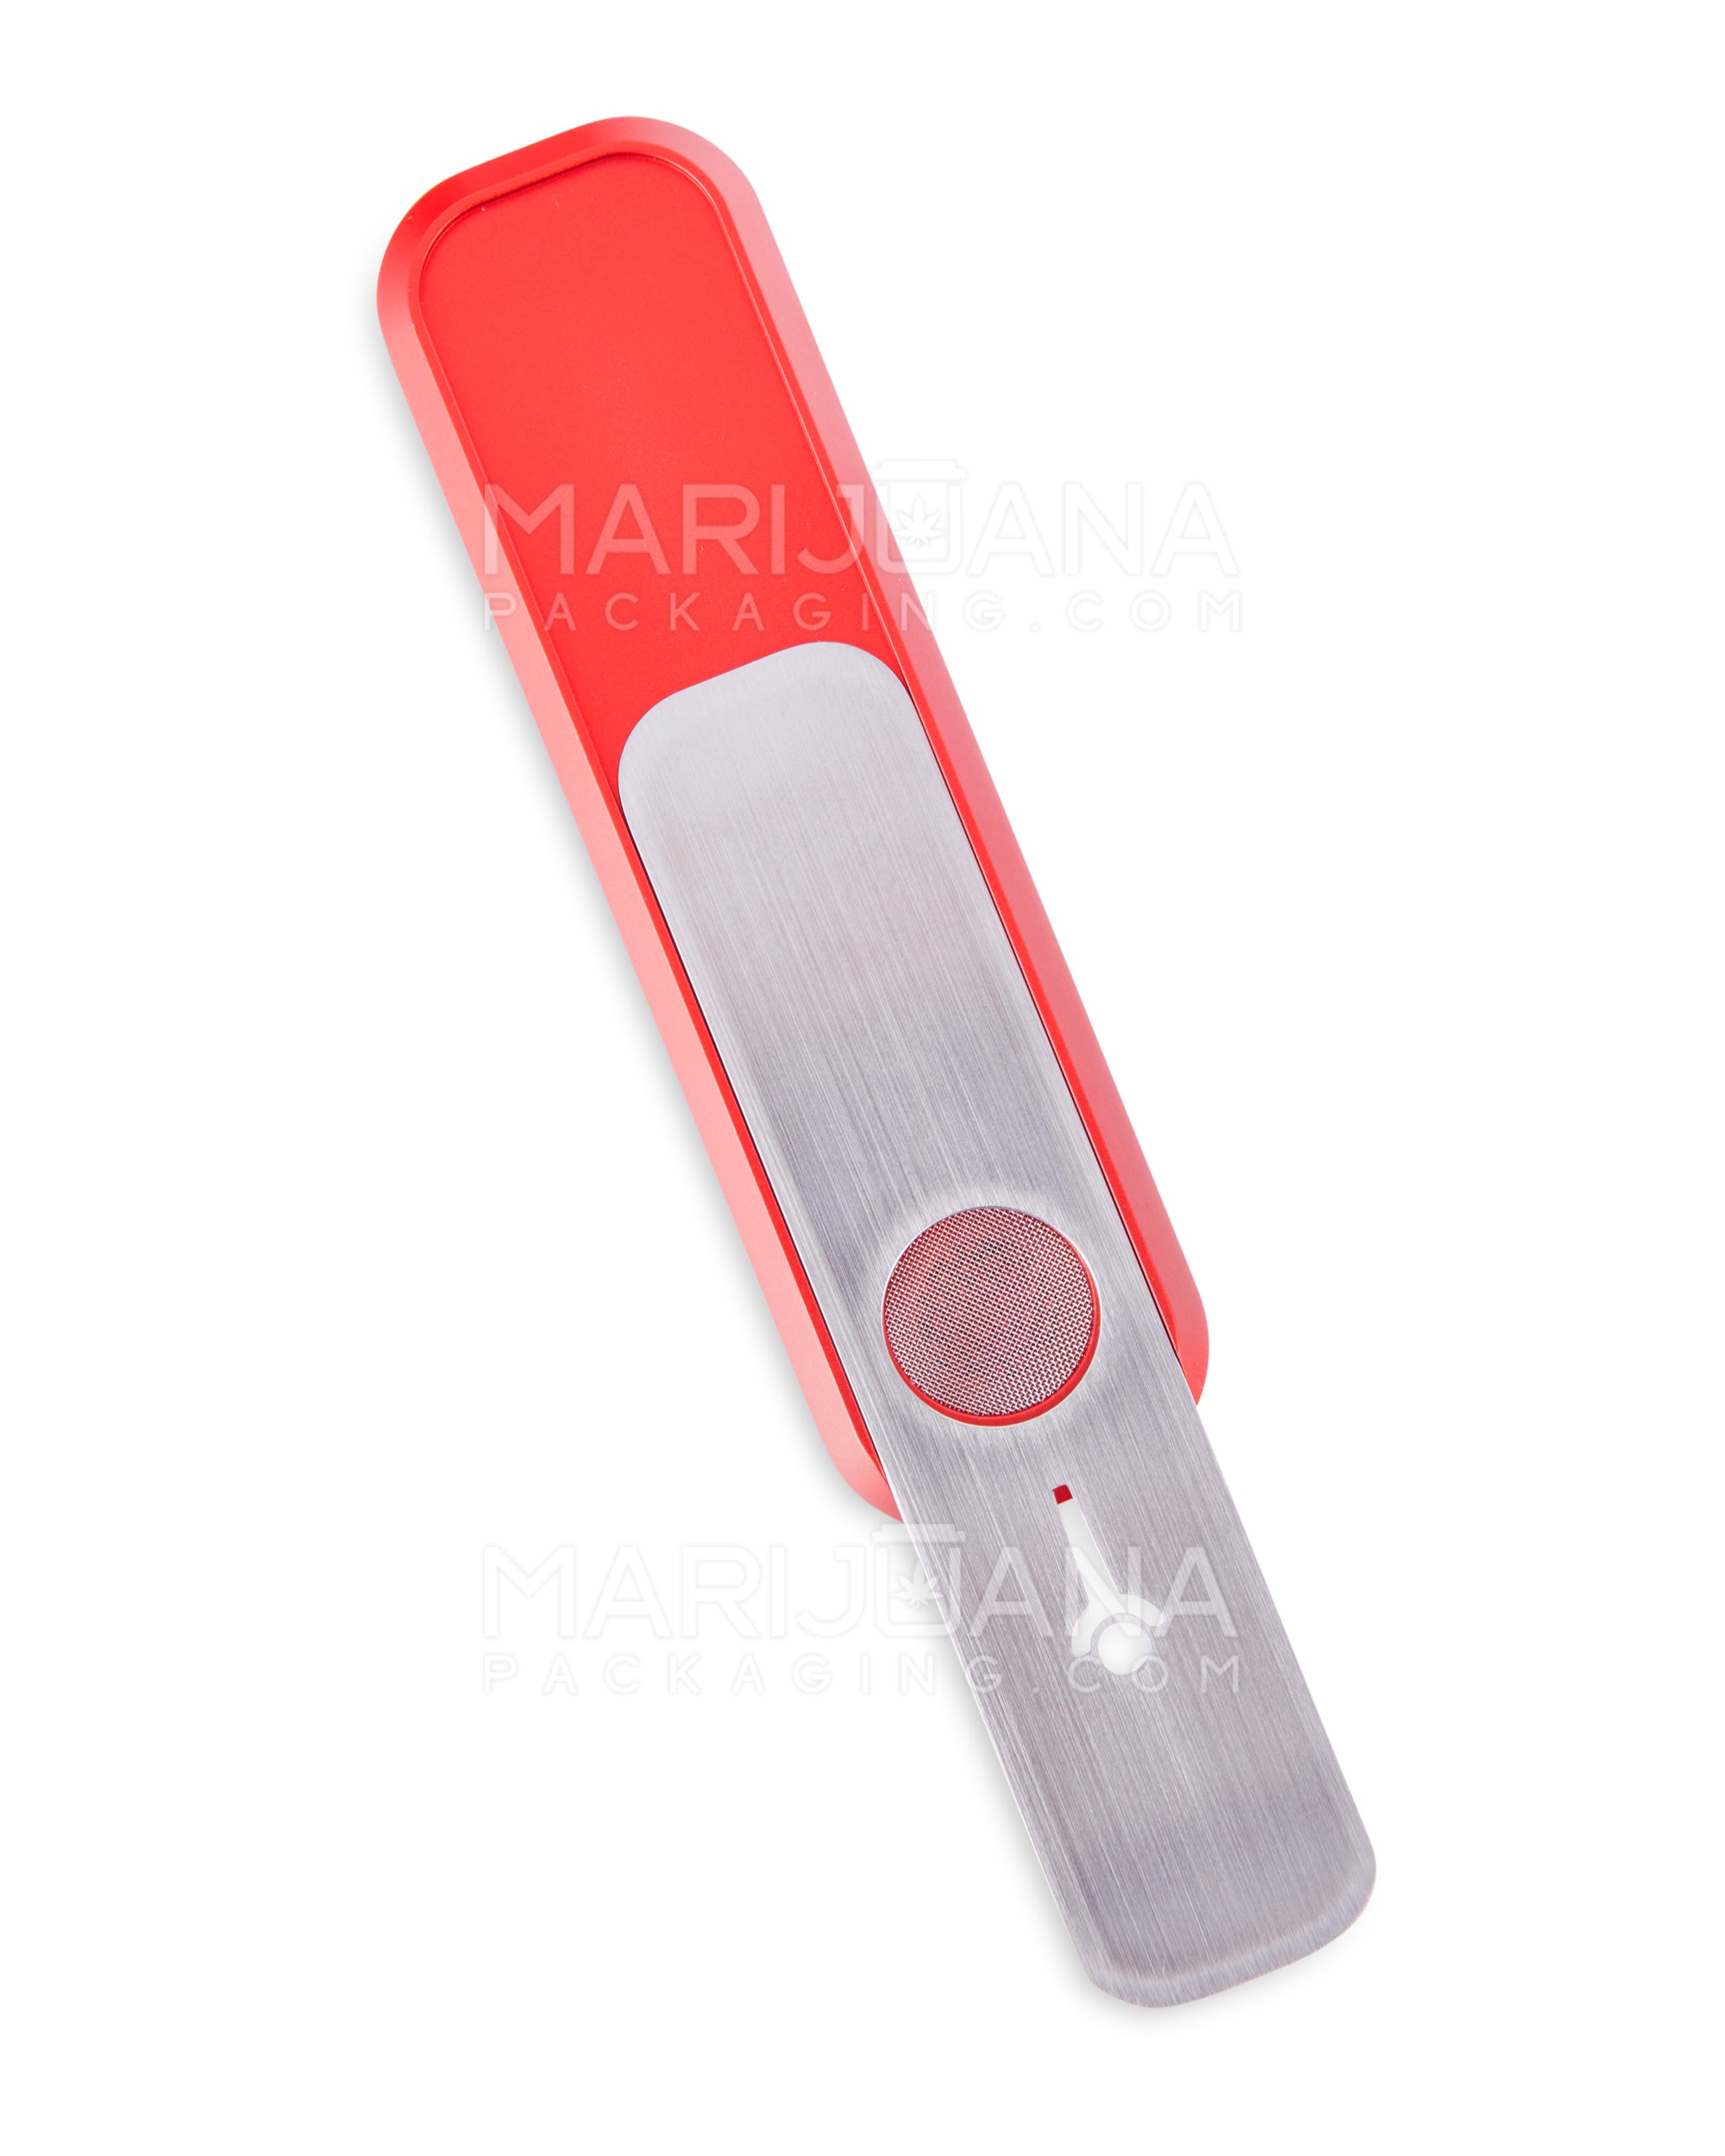 GENIUS PIPE | Mini Color Magnetic Slider Pipe | 5in Long - Metal - Red - 4